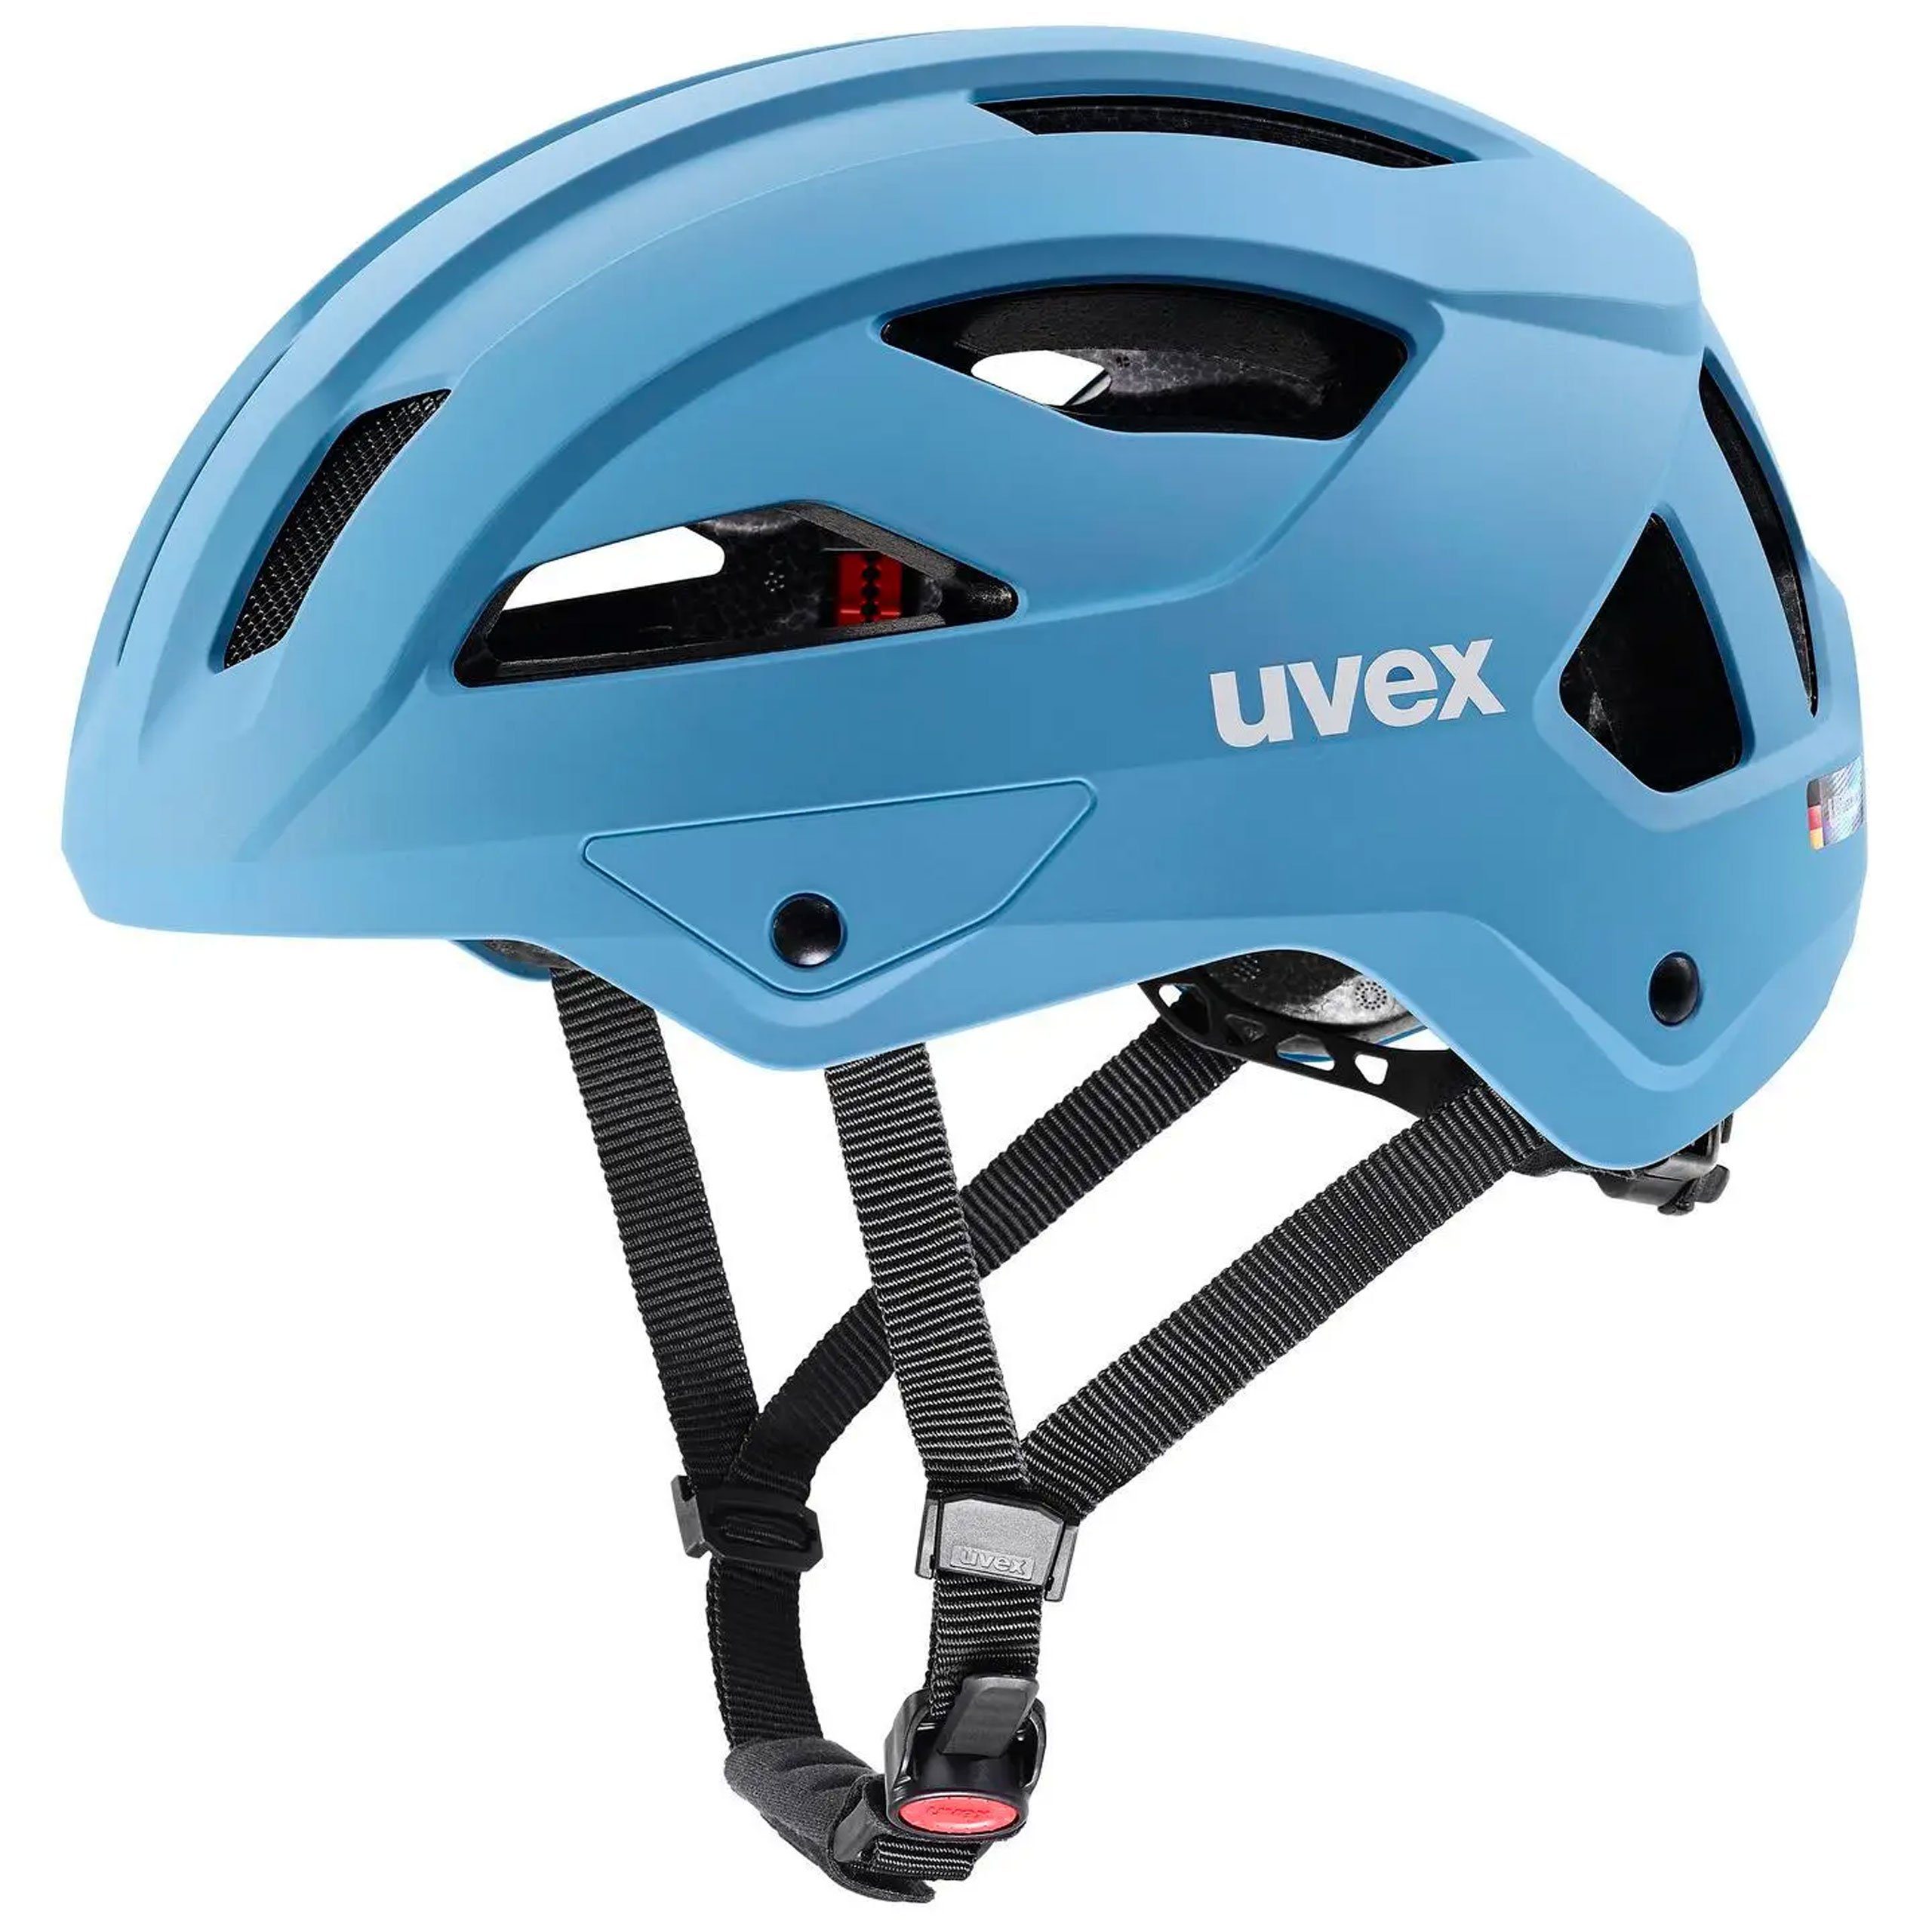 Uvex Fahrradhelm uvex stride - Fahrradhelm für Damen und Herren